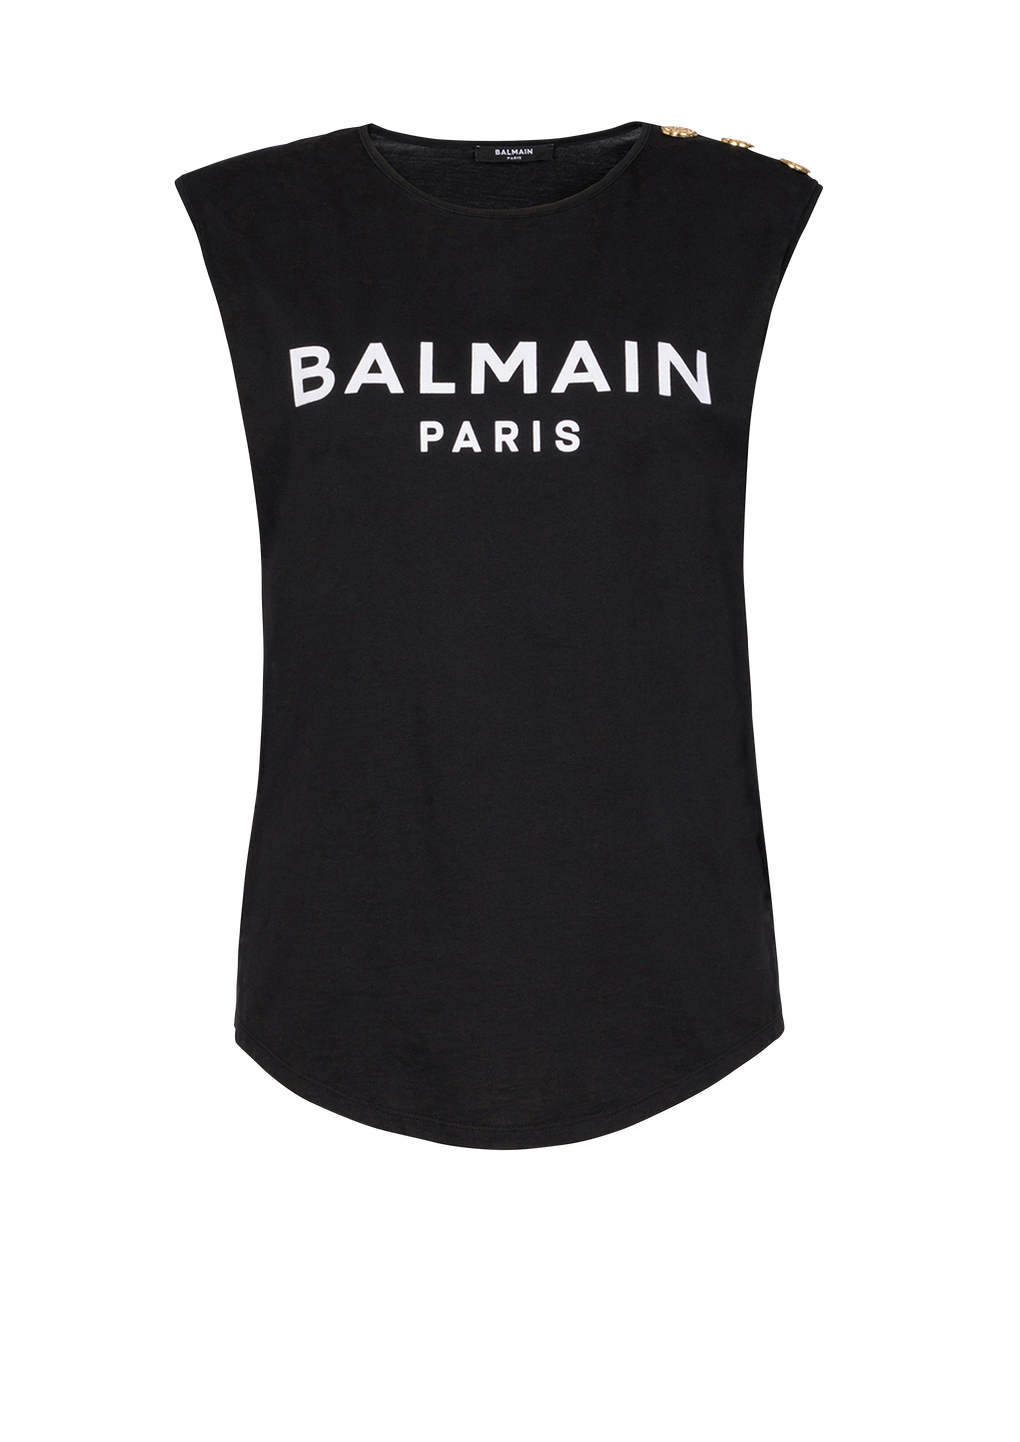 Balmain 로고 프린트 디테일 코튼 티셔츠, 검정색, hi-res